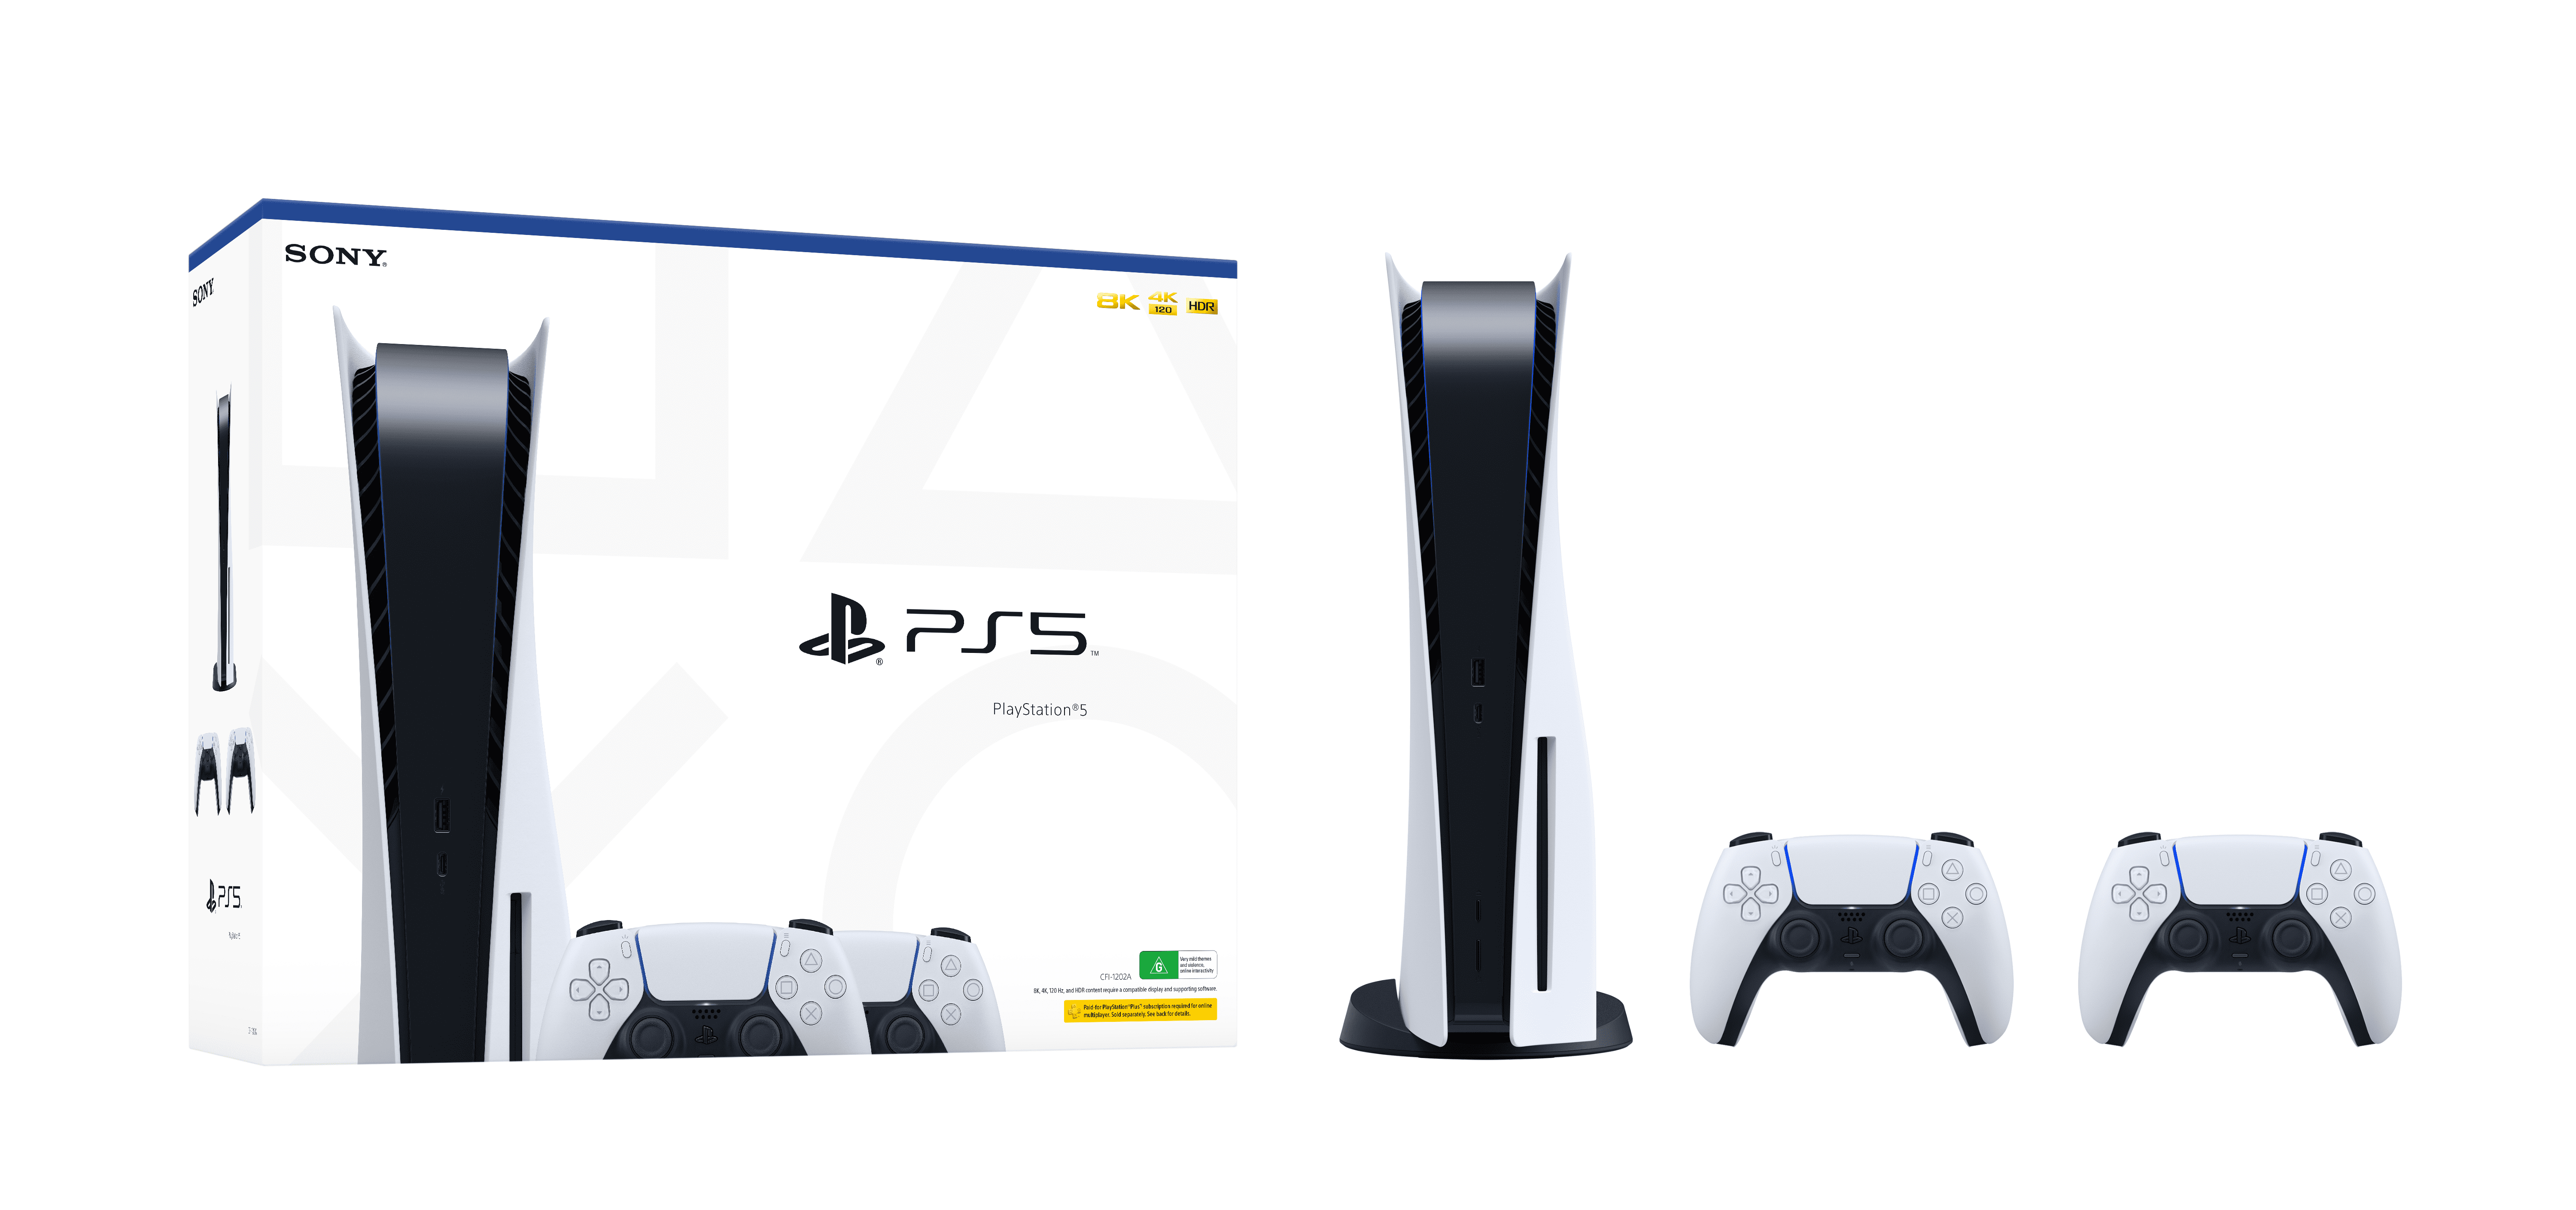 Bộ Máy Chơi Game Sony Playstation 5 (PS5) Standard ASIA-00441, 2 tay cầm Dual Sense, Hàng chính hãng